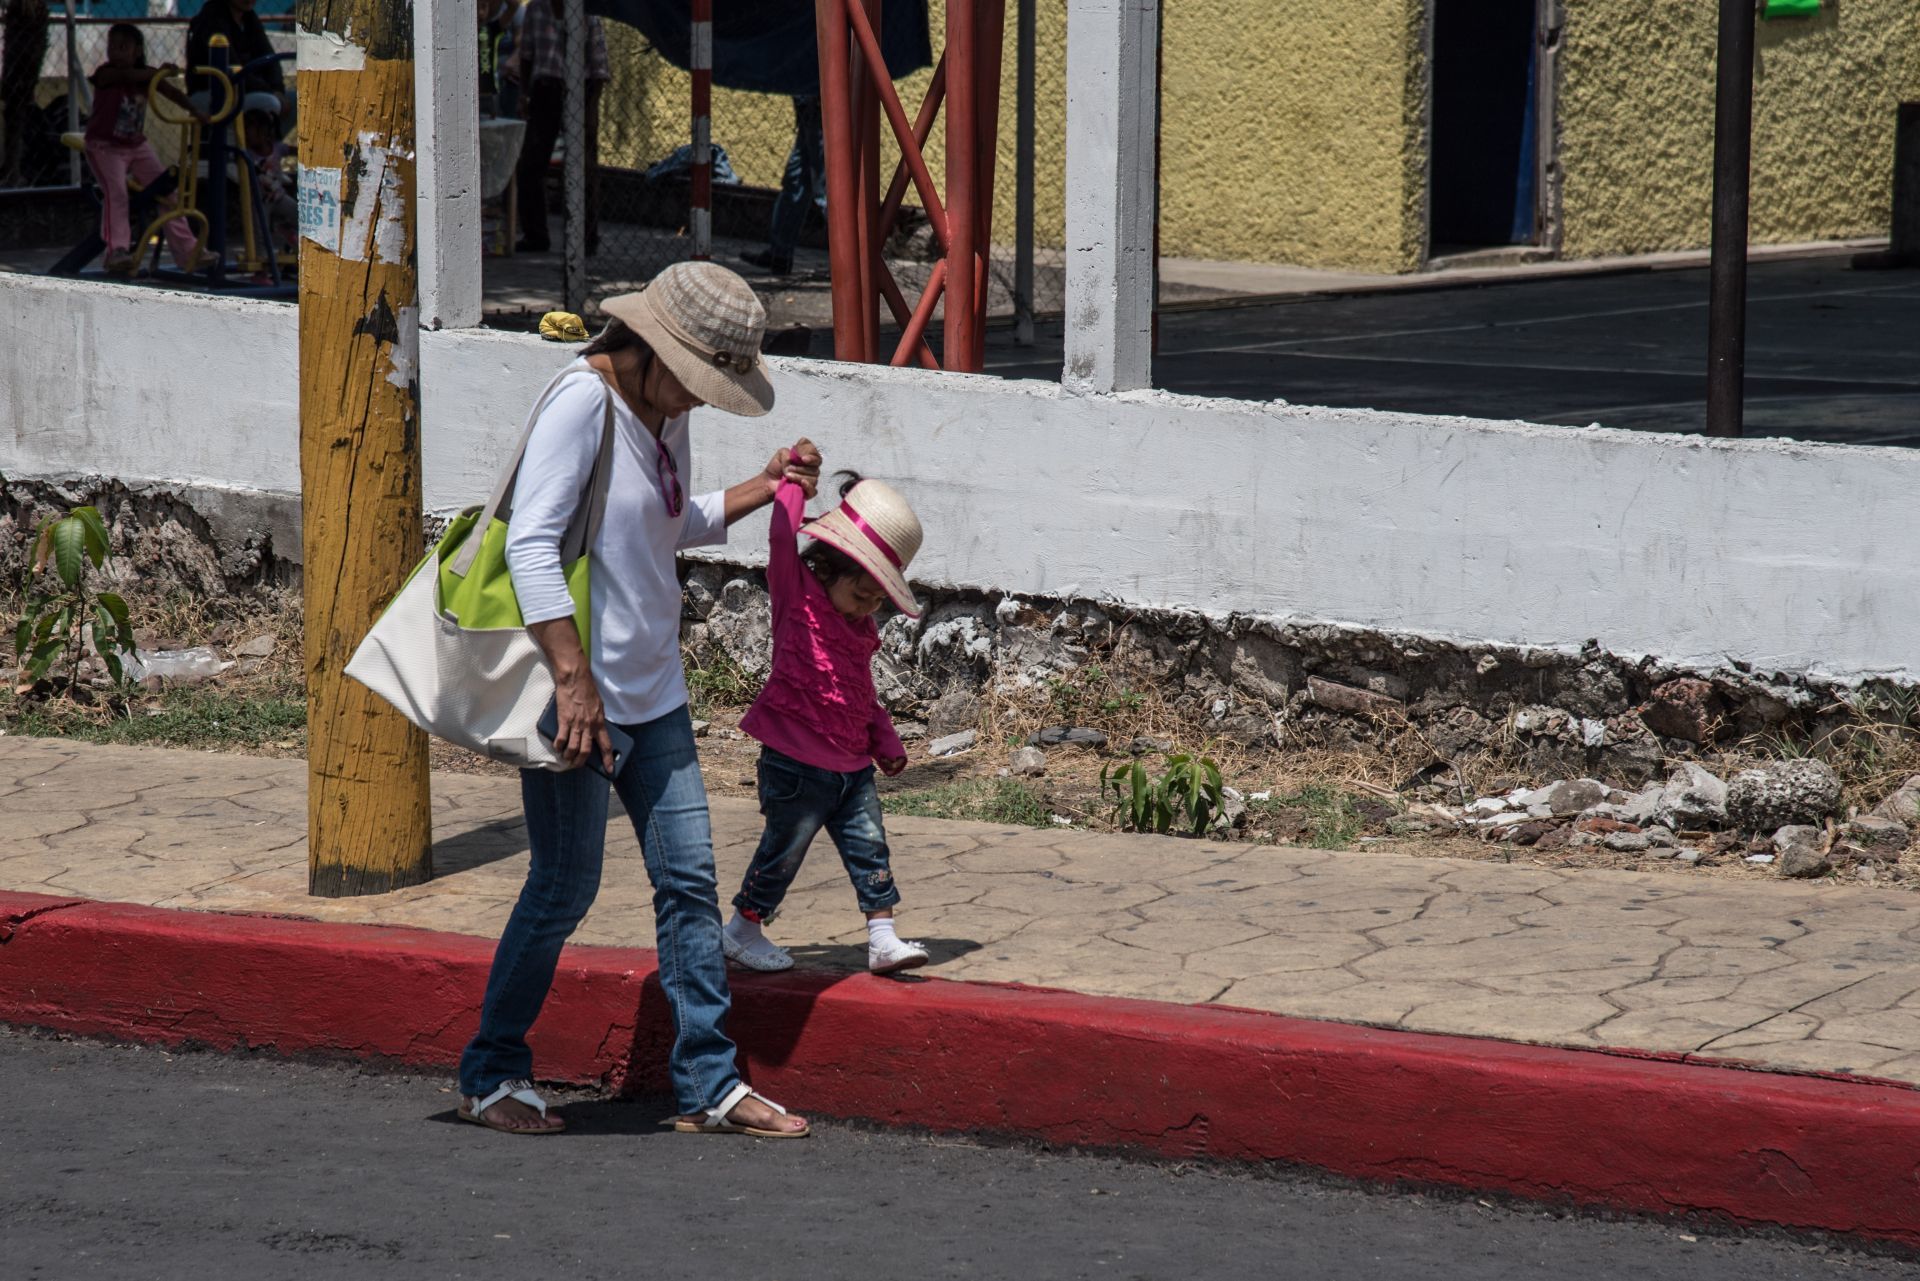 Imágenes del día de las madres en México